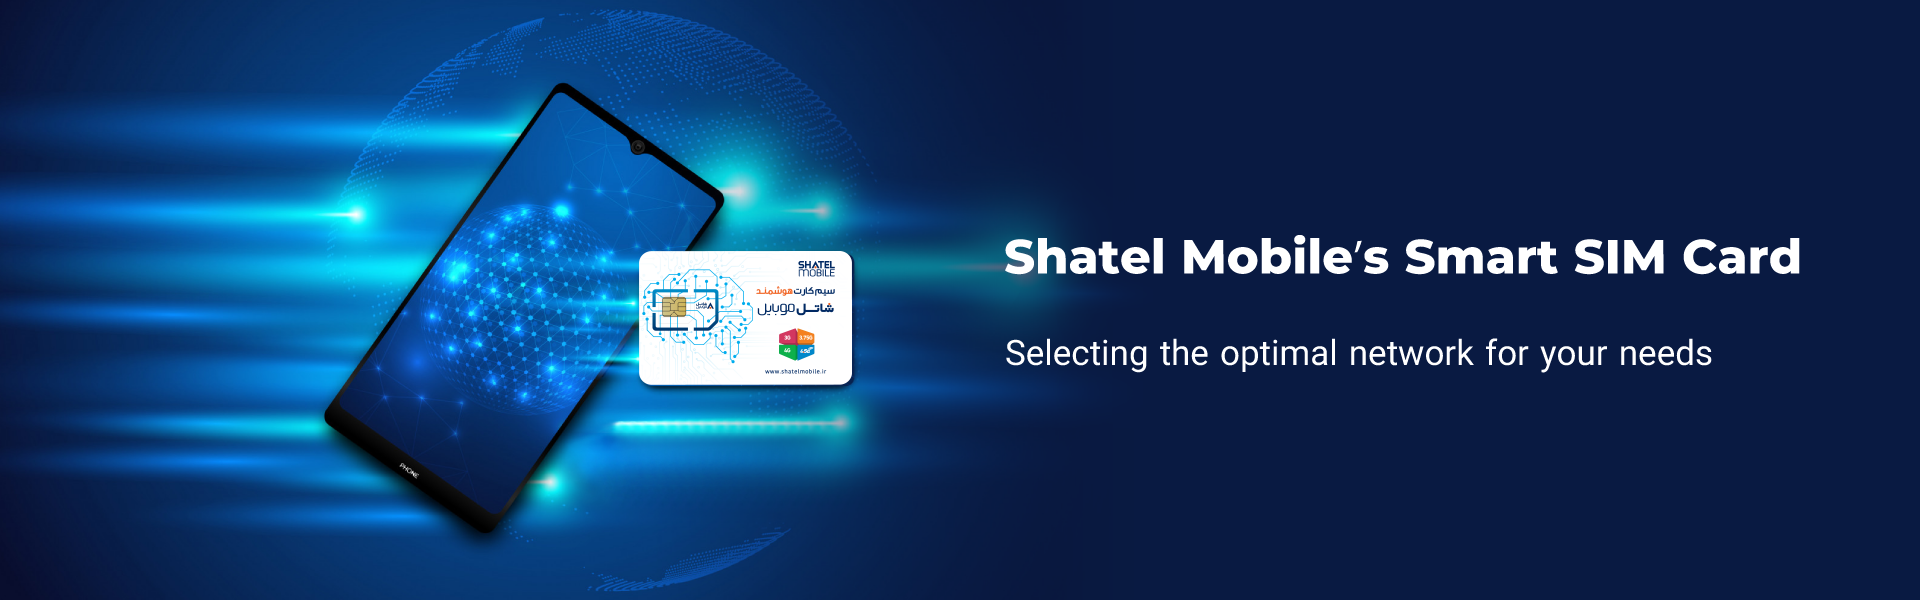 Shatel Mobile